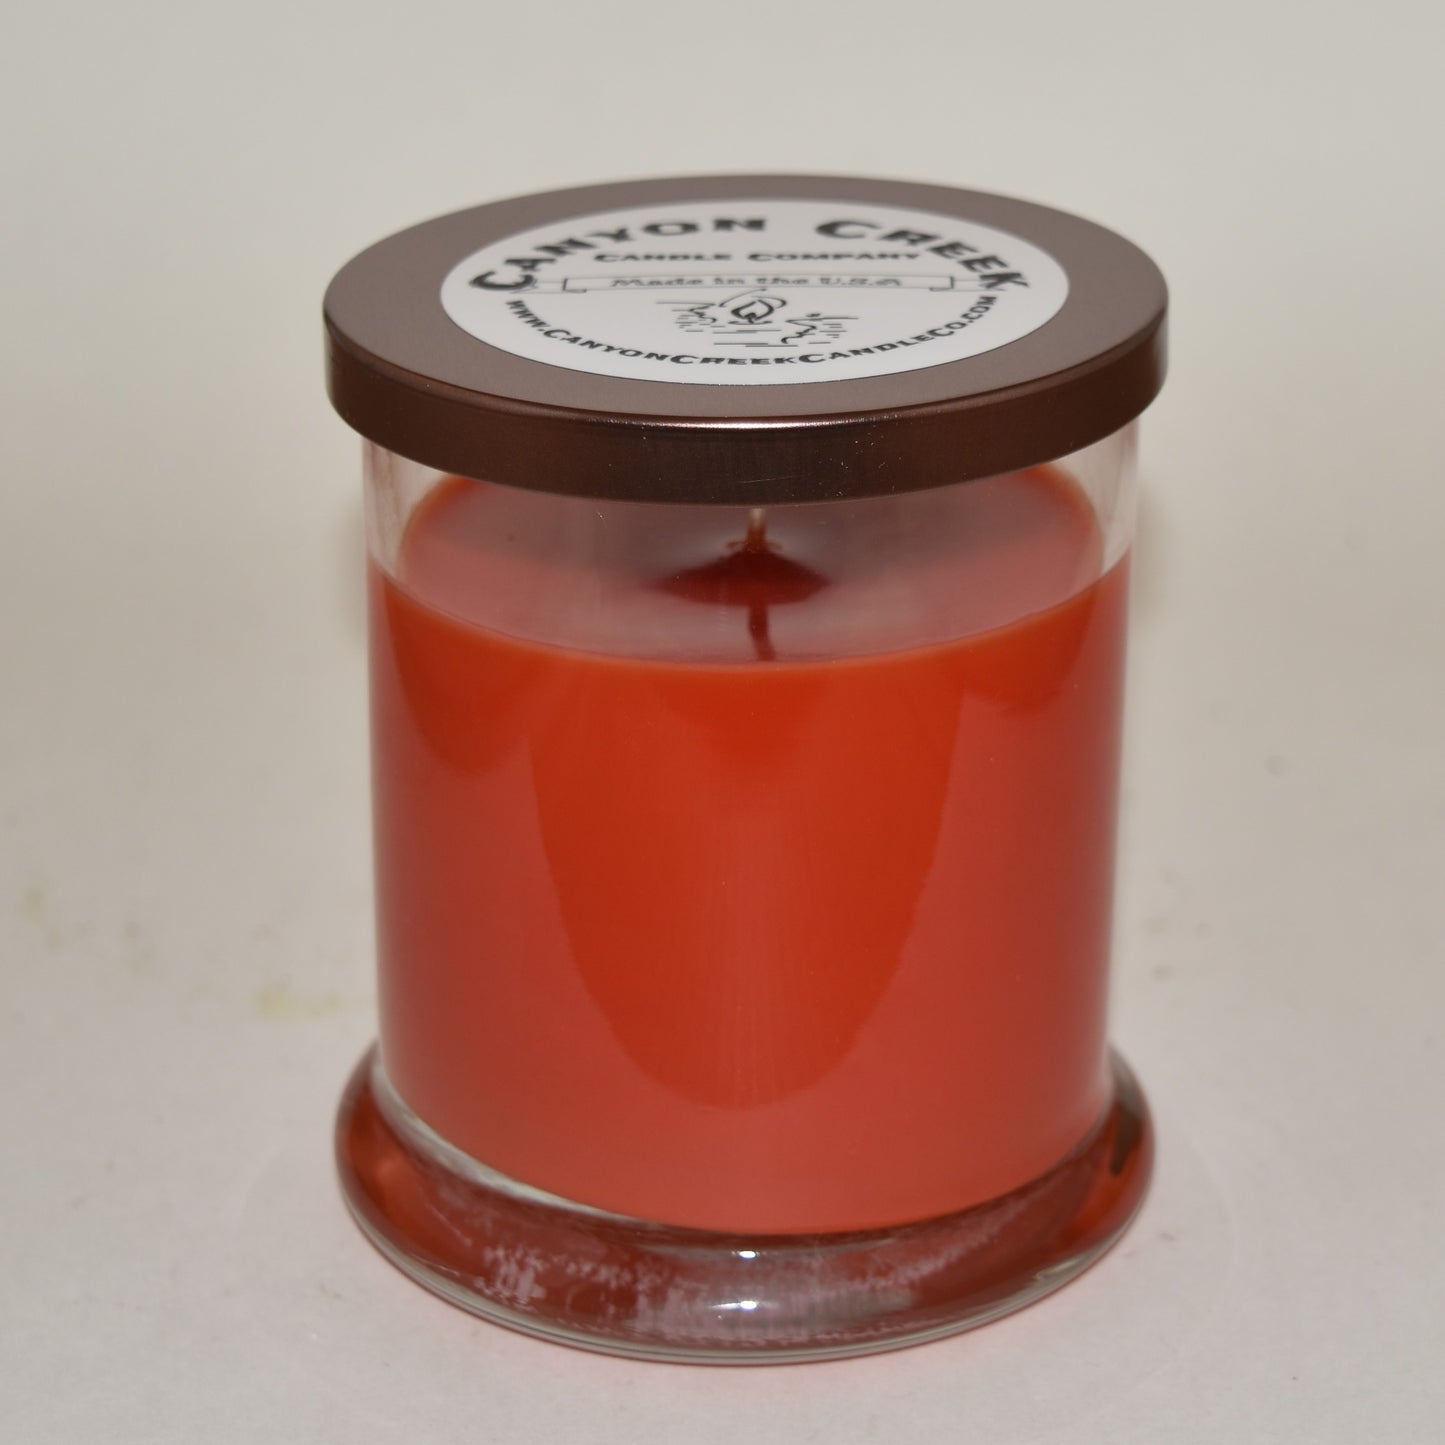 Cranberry Citrus 8oz status jar candle